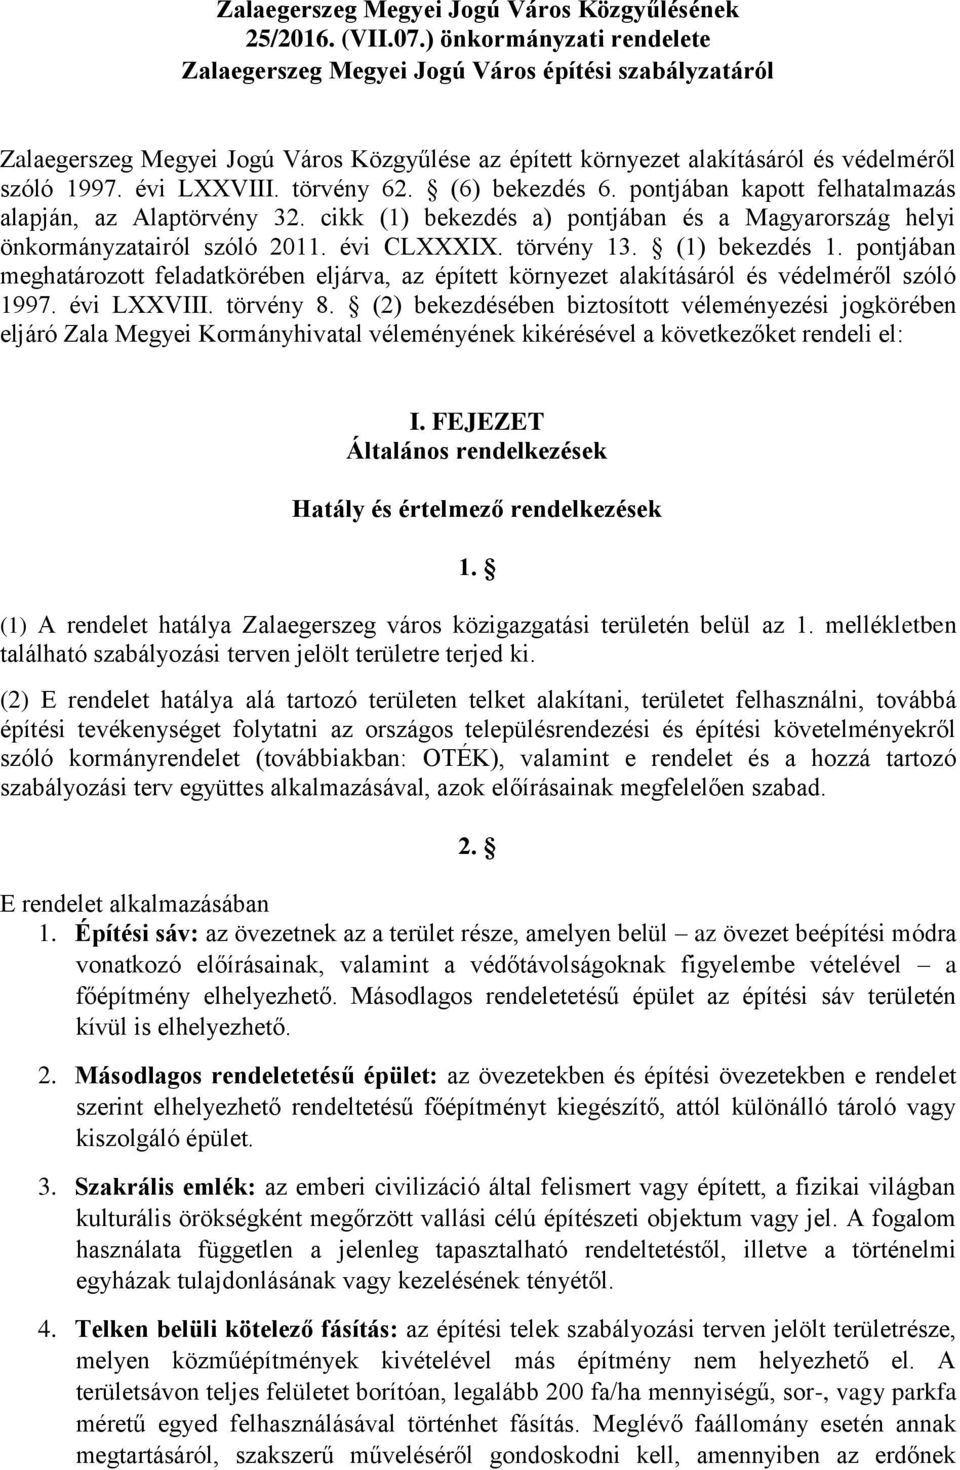 törvény 62. (6) bekezdés 6. pontjában kapott felhatalmazás alapján, az Alaptörvény 32. cikk (1) bekezdés a) pontjában és a Magyarország helyi önkormányzatairól szóló 2011. évi CLXXXIX. törvény 13.